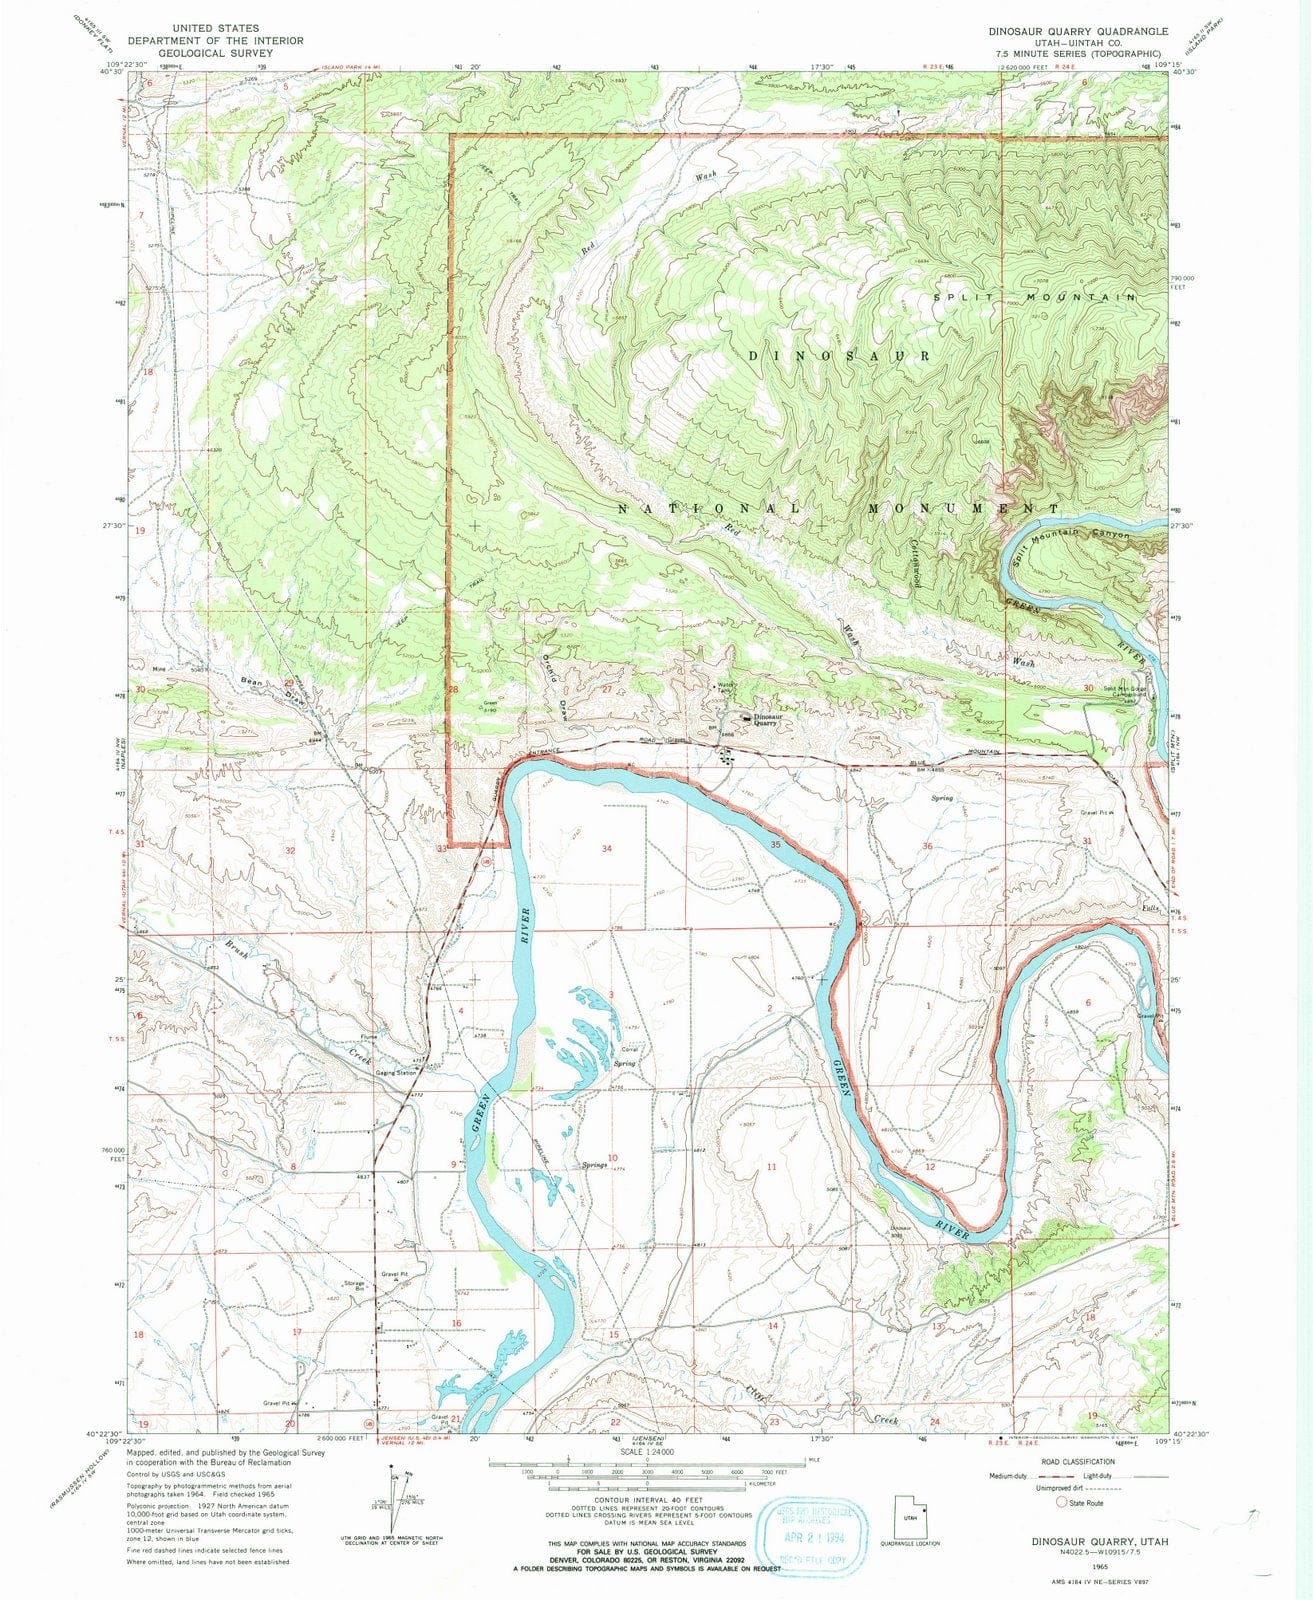 1965 Dinosaur Quarry, UT - Utah - USGS Topographic Map